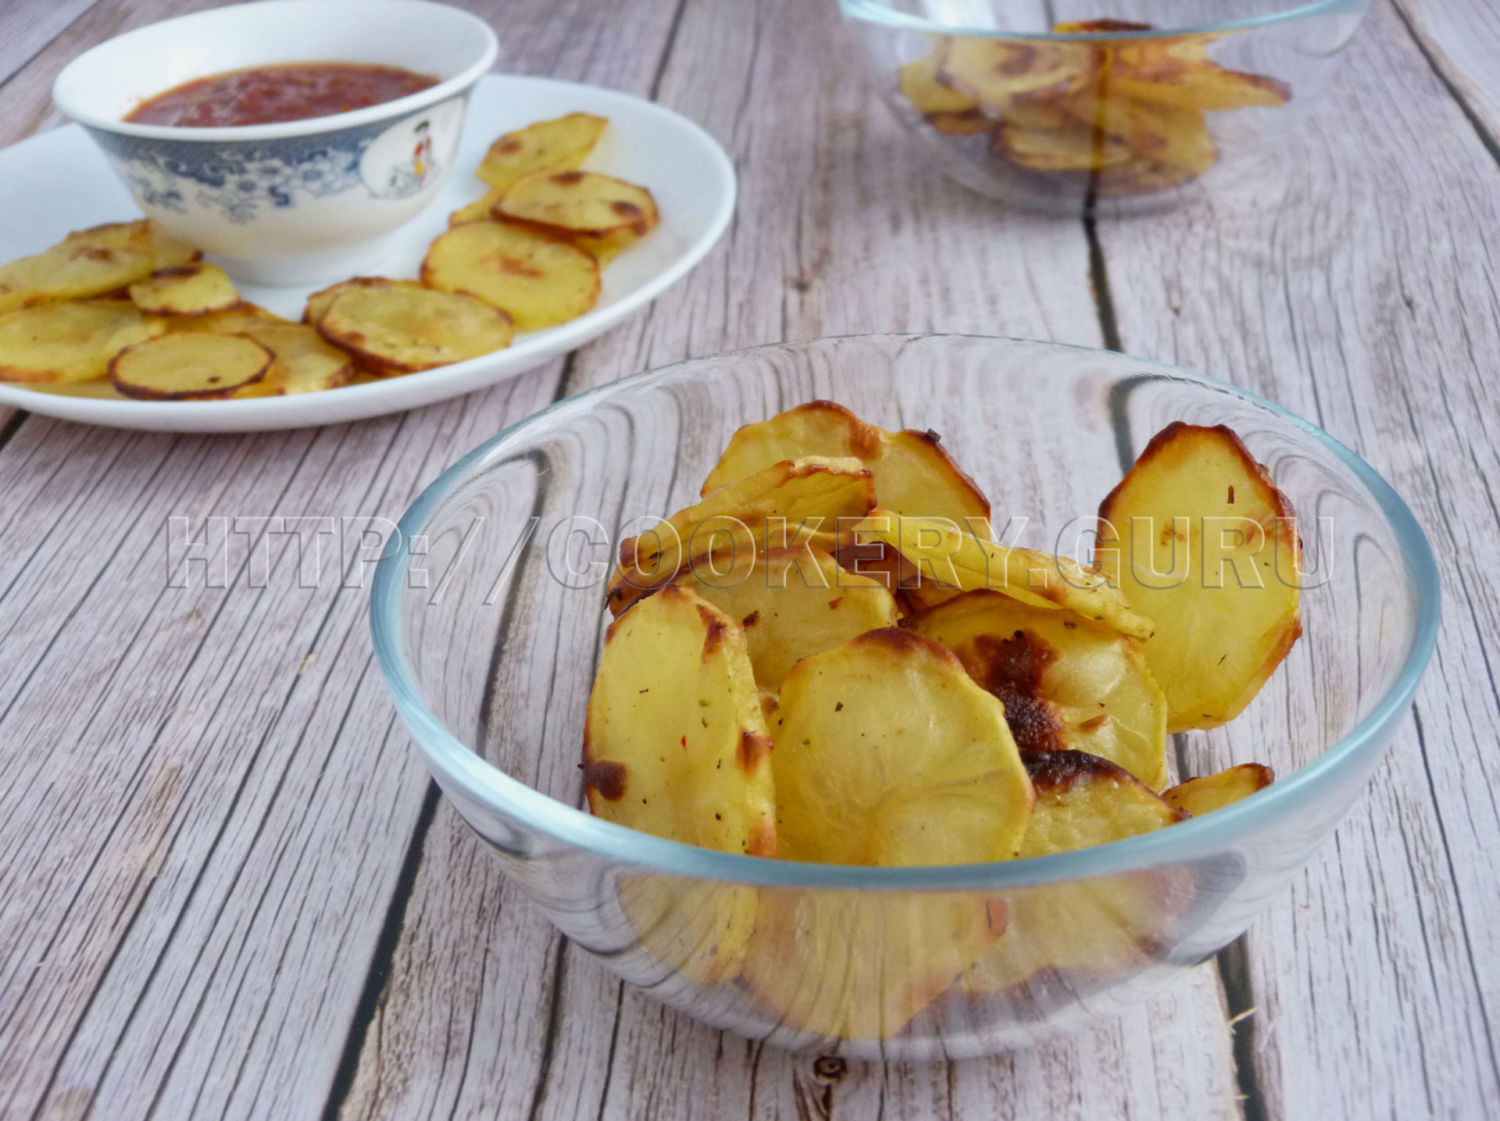 картофельные чипсы, домашние картофельные чипсы, картофельные чипсы в духовке, картофельные чипсы в домашних условиях, рецепт картофельных чипсов, как сделать картофельные чипсы, домашние картофельные чипсы в духовке, фото картофельных чипсов, чипсы картофельные в домашних условиях духовка, как приготовить картофельные чипсы, картофельные чипсы рецепт с фото, картофельные чипсы в духовке рецепт, картофельные чипсы дома, домашние картофельные чипсы рецепт, картофельные чипсы в духовке фото, картофельные чипсы в духовке рецепт с фото, как сделать домашние картофельные чипсы, как сделать картофельные чипсы в домашних условиях, рецепт картофельных чипсов в домашних условиях, чипсы картофельные в домашних условиях как приготовить, как сделать картофельные чипсы в духовке, картофельные чипсы без масла, картофельные чипсы с солью, как делают картофельные чипсы, домашние картофельные чипсы в духовке рецепт, как сделать картофельные чипсы дома, картофельные чипсы домашние фото, чипсы из картофеля, хрустящий картофель чипсы, домашние чипсы из картофеля, чипсы из картофеля в домашних условиях, чипсы из картофеля в духовке, как сделать чипсы из картофеля, рецепт чипсов из картофеля, как сделать домашние чипсы из картофеля, домашние чипсы из картофеля в духовке, домашний рецепт чипсов из картофеля, рецепт чипсы из картофеля в домашних условиях, картофель чипсы фото, как приготовить чипсы из картофеля, чипсы из картофеля дома, сделать чипсы в духовке из картофеля, натуральные чипсы из картофеля, чипсы из картофеля в духовке рецепт, как приготовить домашние чипсы из картофеля, как дома сделать чипсы из картофеля